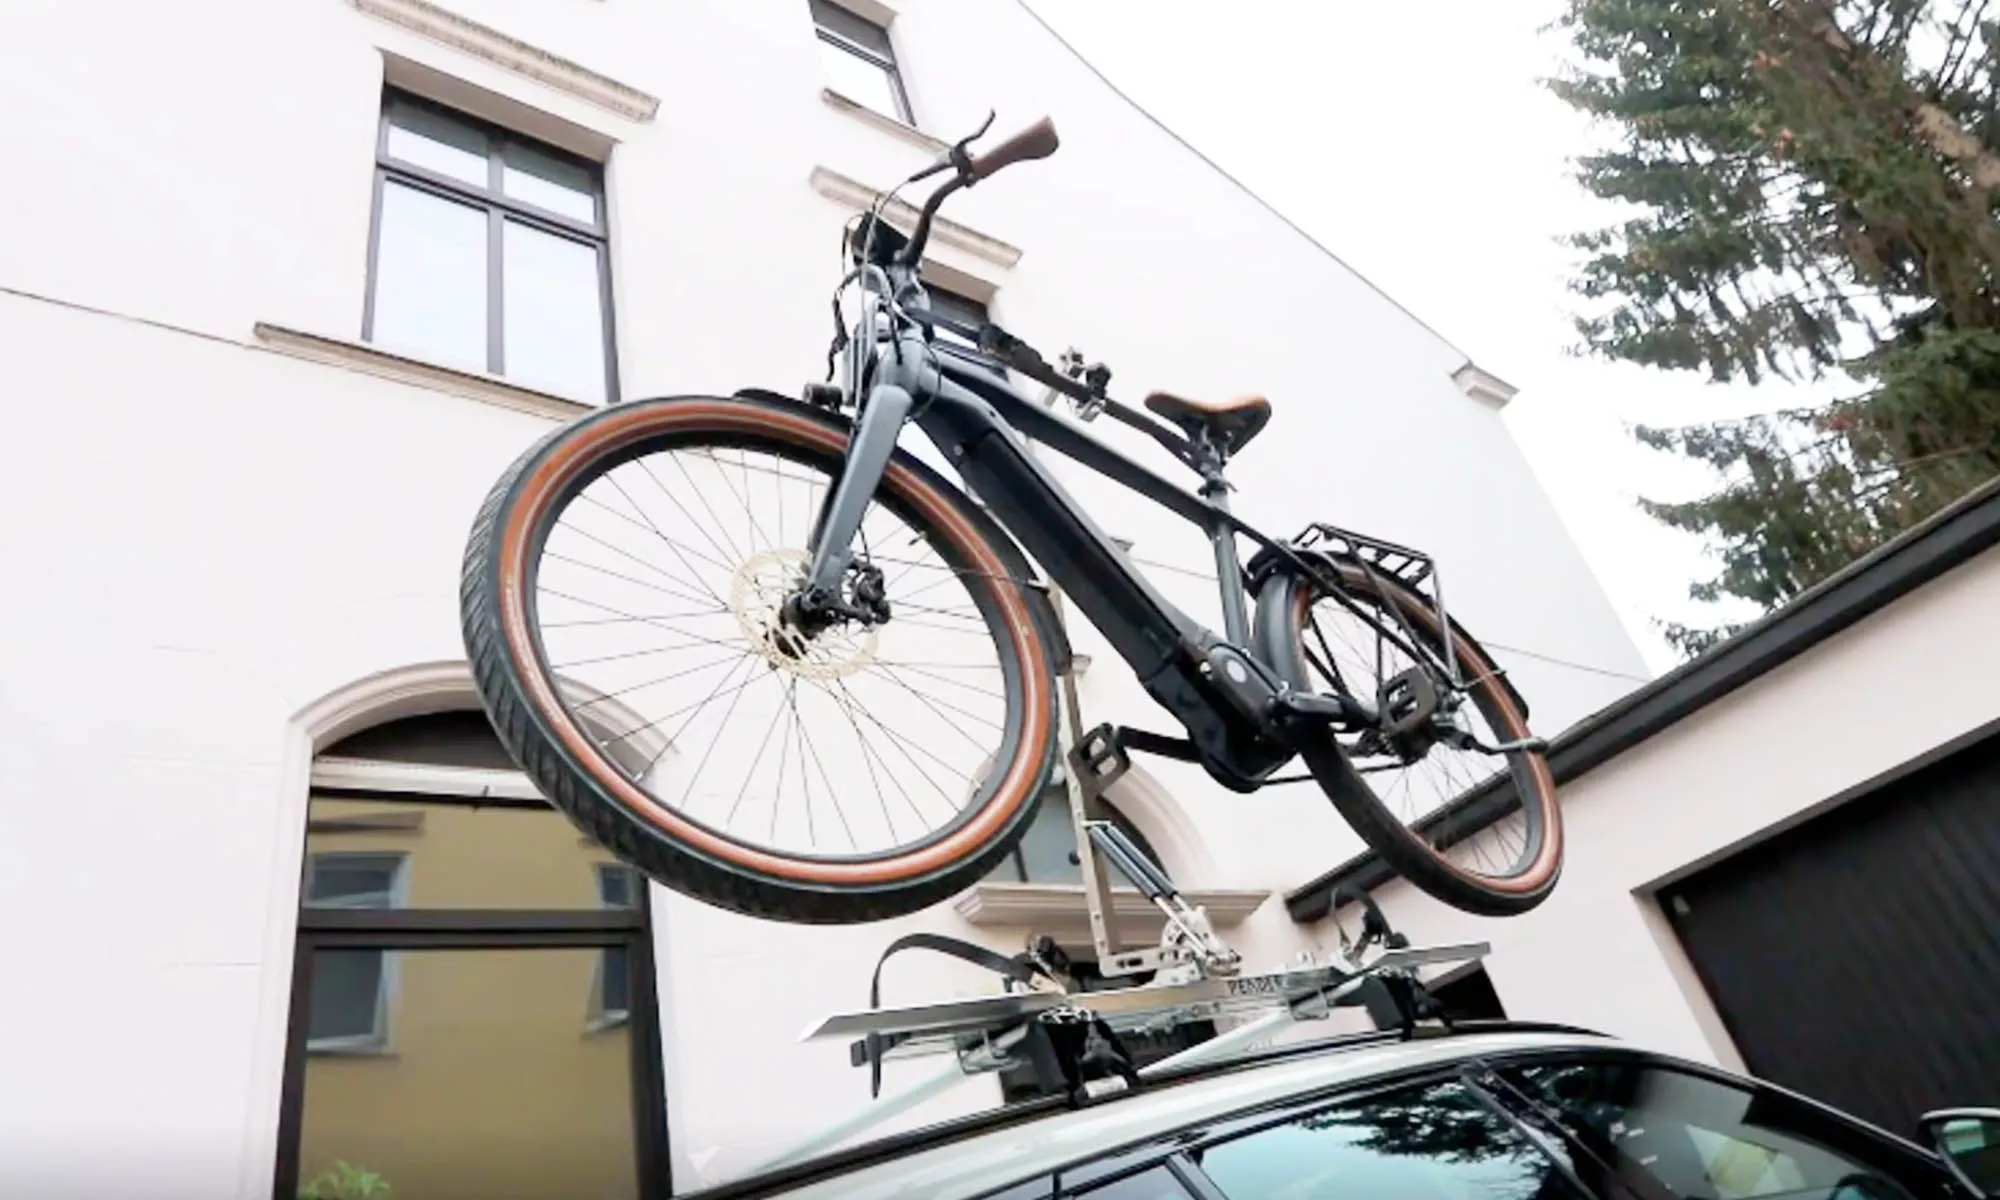 El nuevo Ebikelifter de Pender se convierte en un sistema fácil, práctico y seguro para transportar bicicletas eléctricas en el techo de un vehículo.